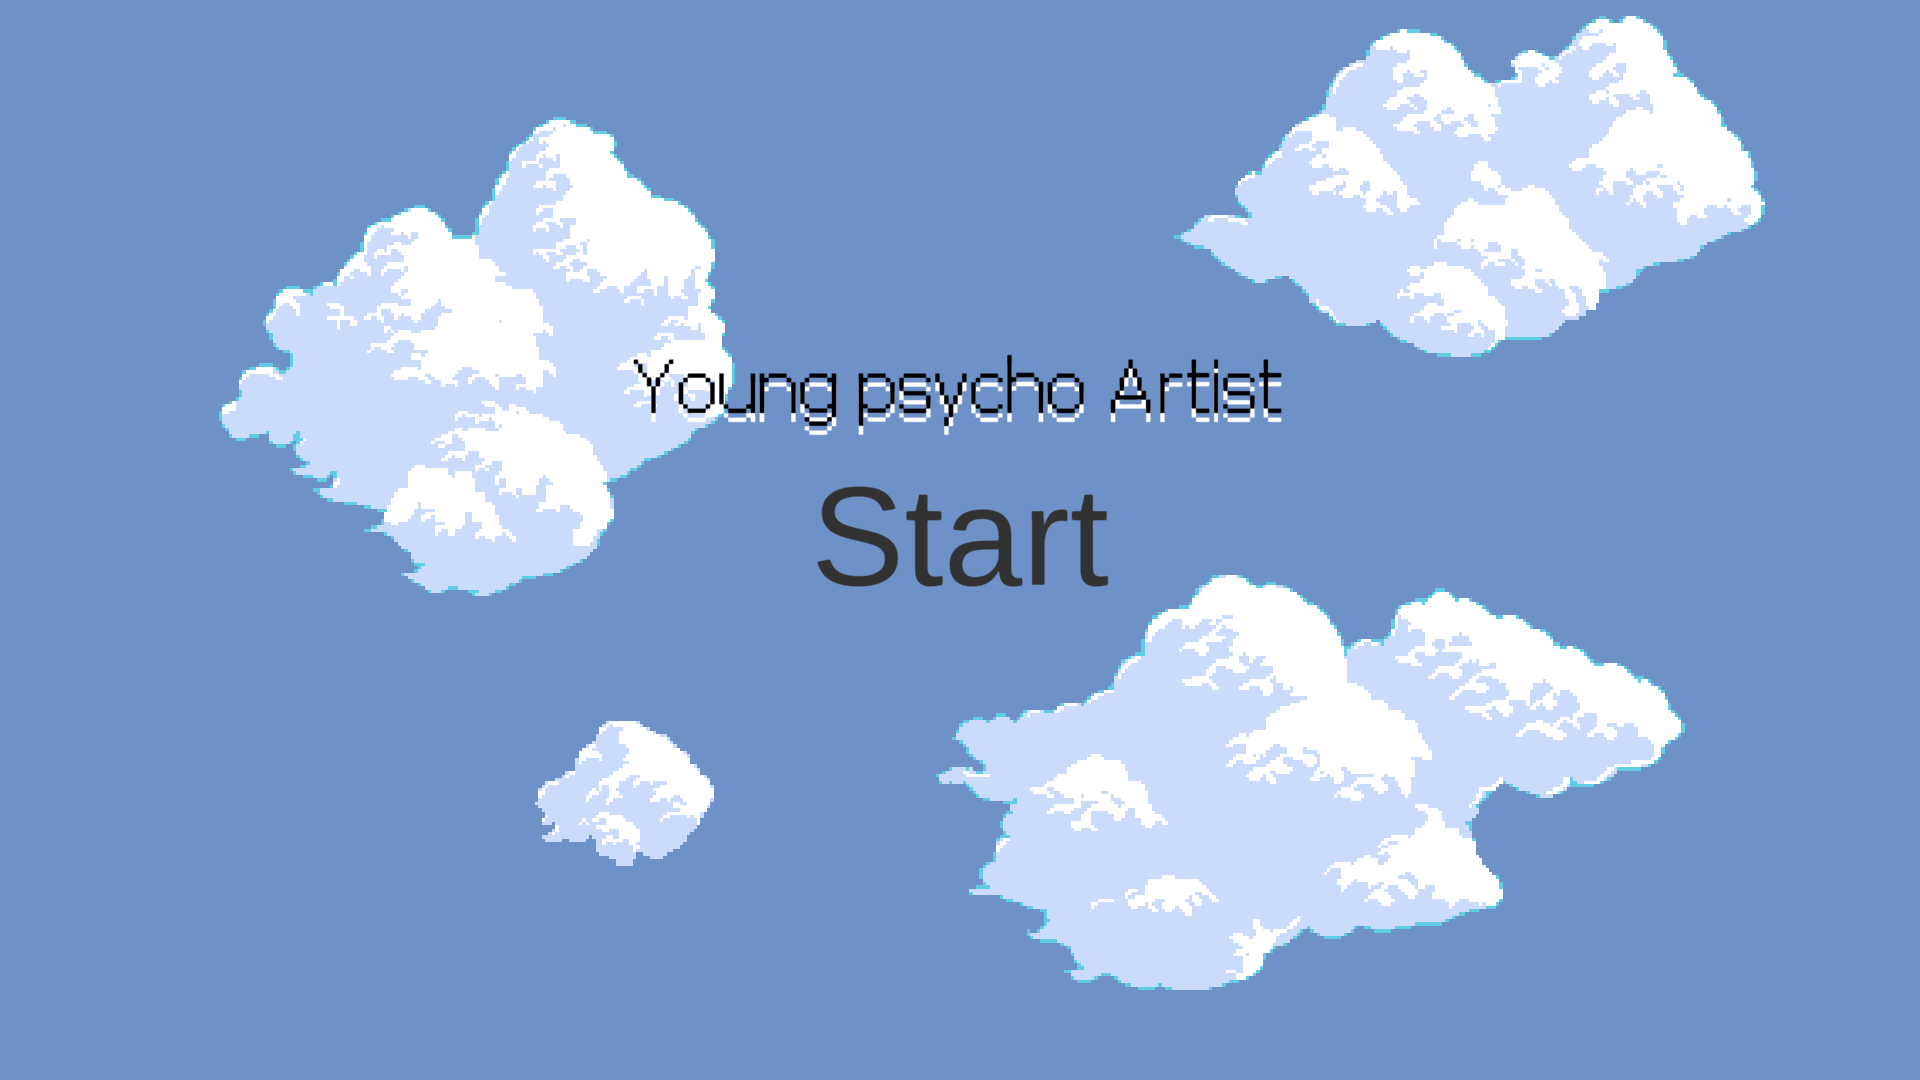 Young phsygo  artist